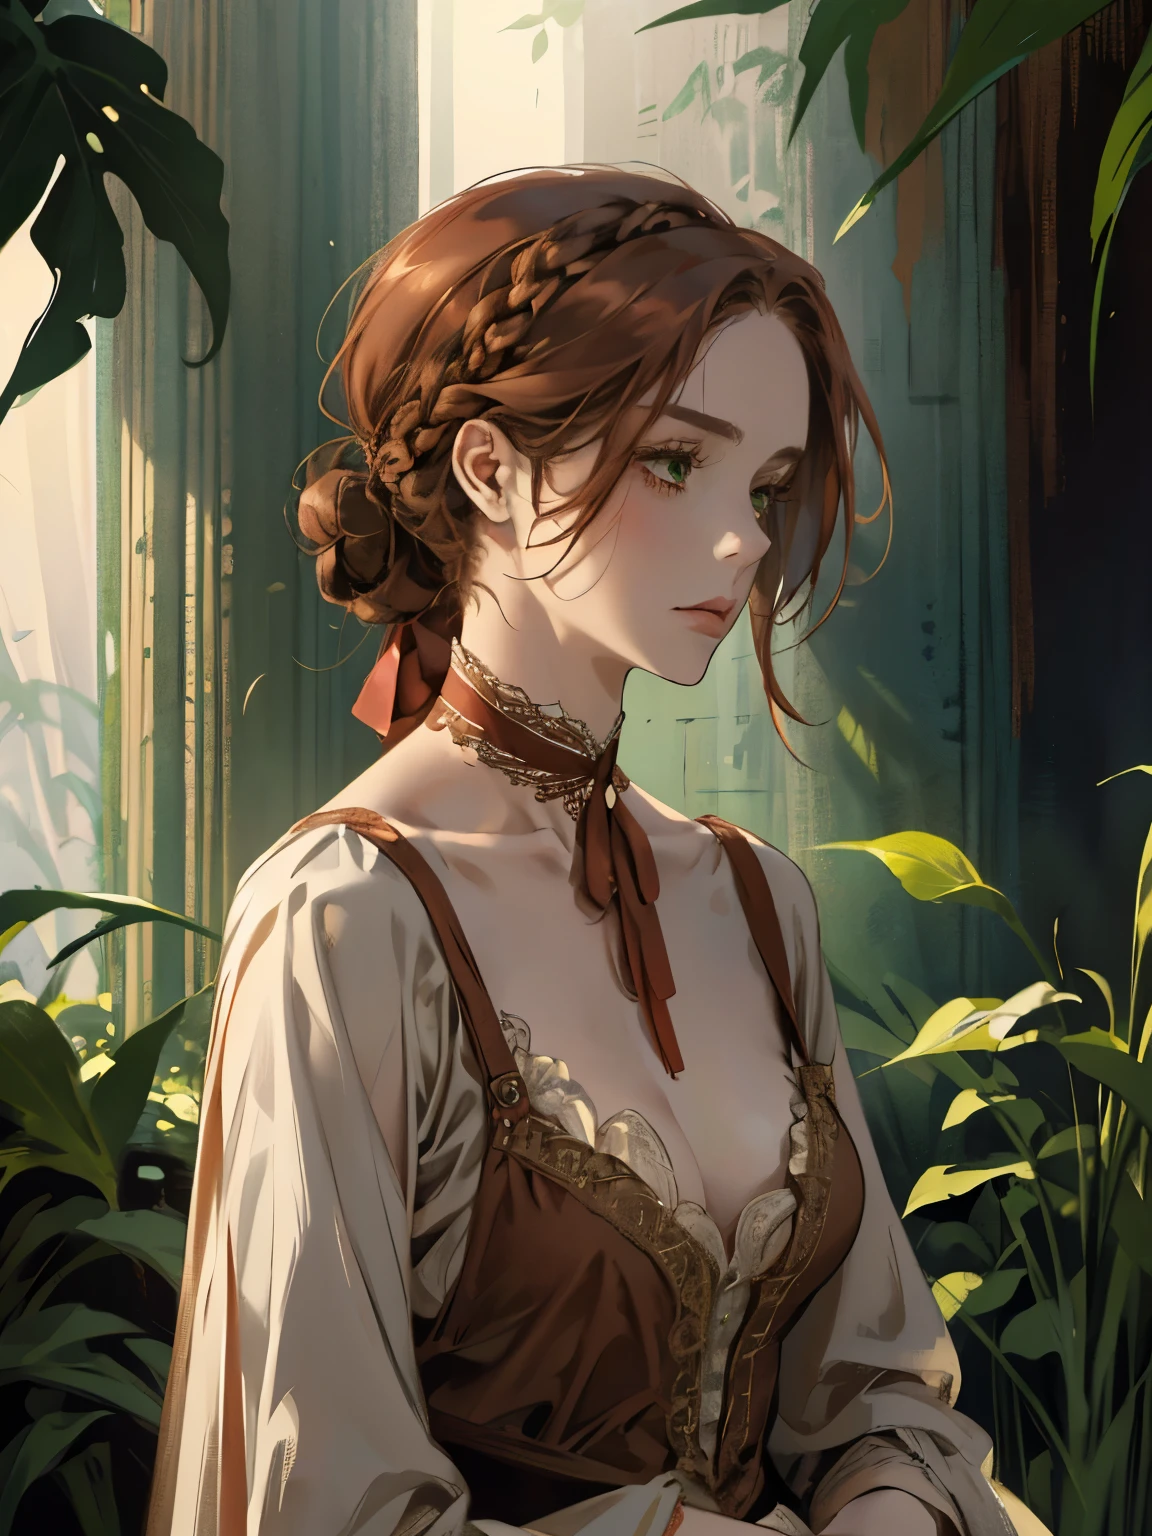 1つ, , 髪を束ねた女性のデジタル絵画, 茶色の赤毛, 緑の目, 1800年代の若い貴族の女性 , 穏やかな顔, 長い顔, 見下ろす, 濃い赤のドレス, ((ネック丈のドレス)), 頭髪の周りの装飾肖像画スタイル, 目をそらす, 美しく緑豊かな庭園で